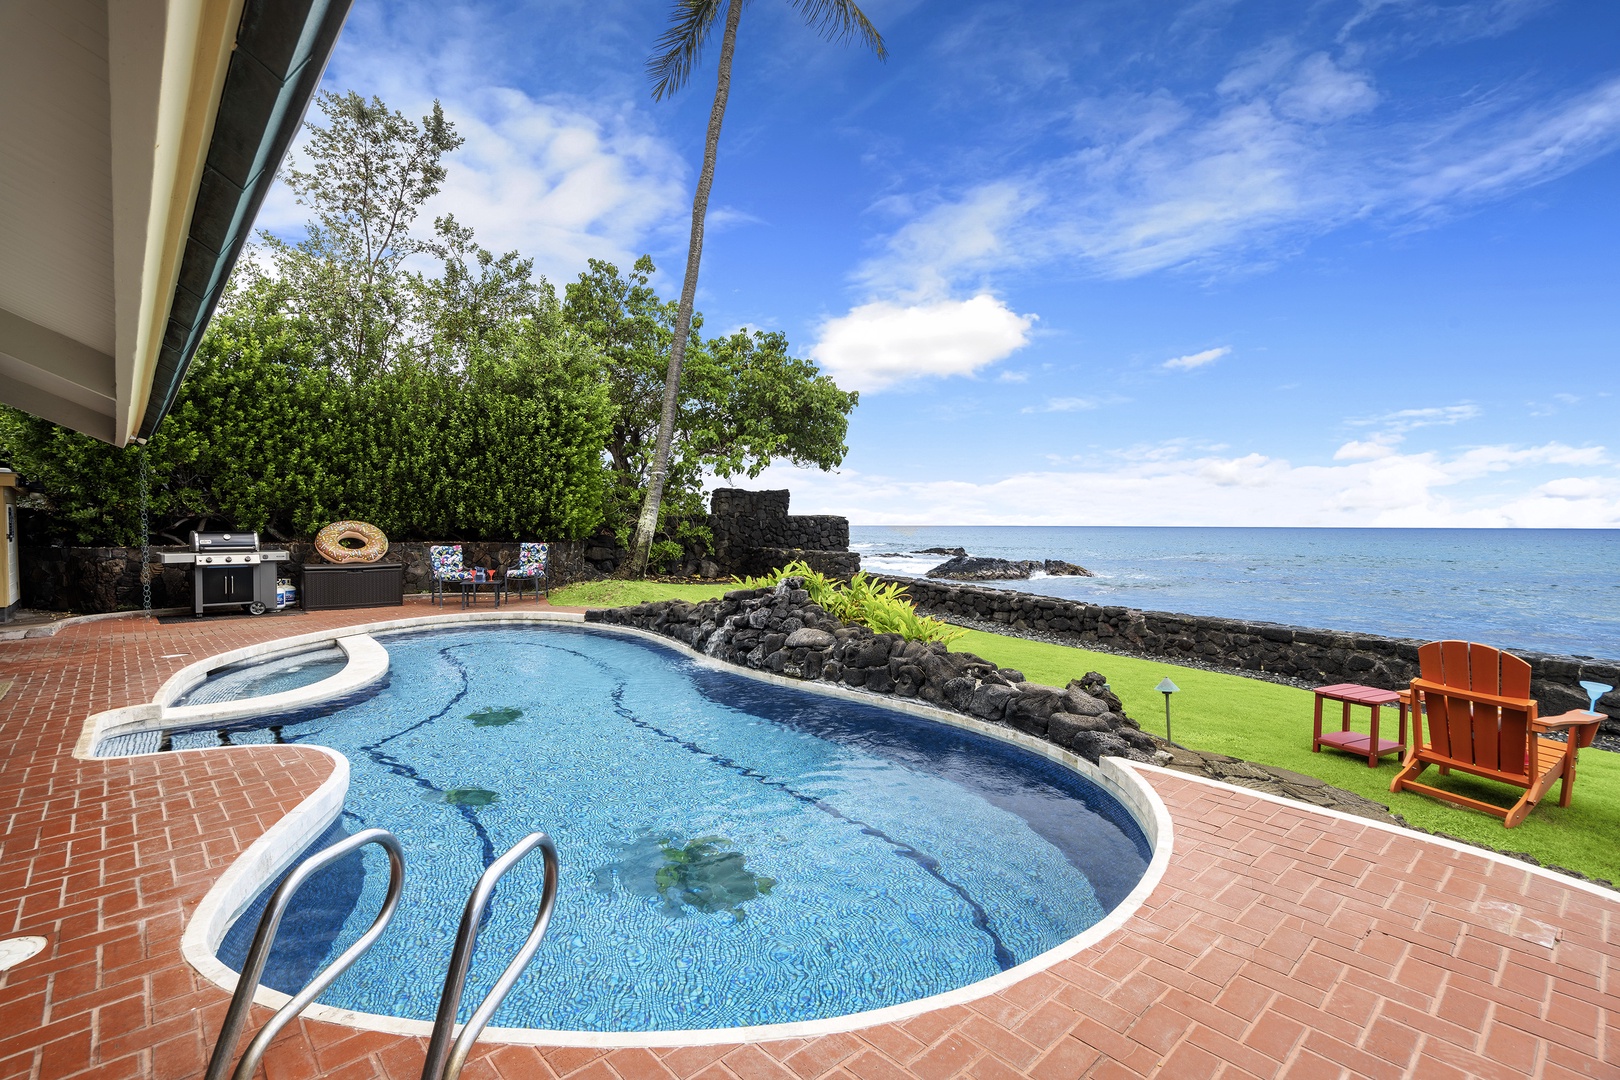 Kailua Kona Vacation Rentals, Hale Pua - Salt water pool and spa with a 6ft deep end